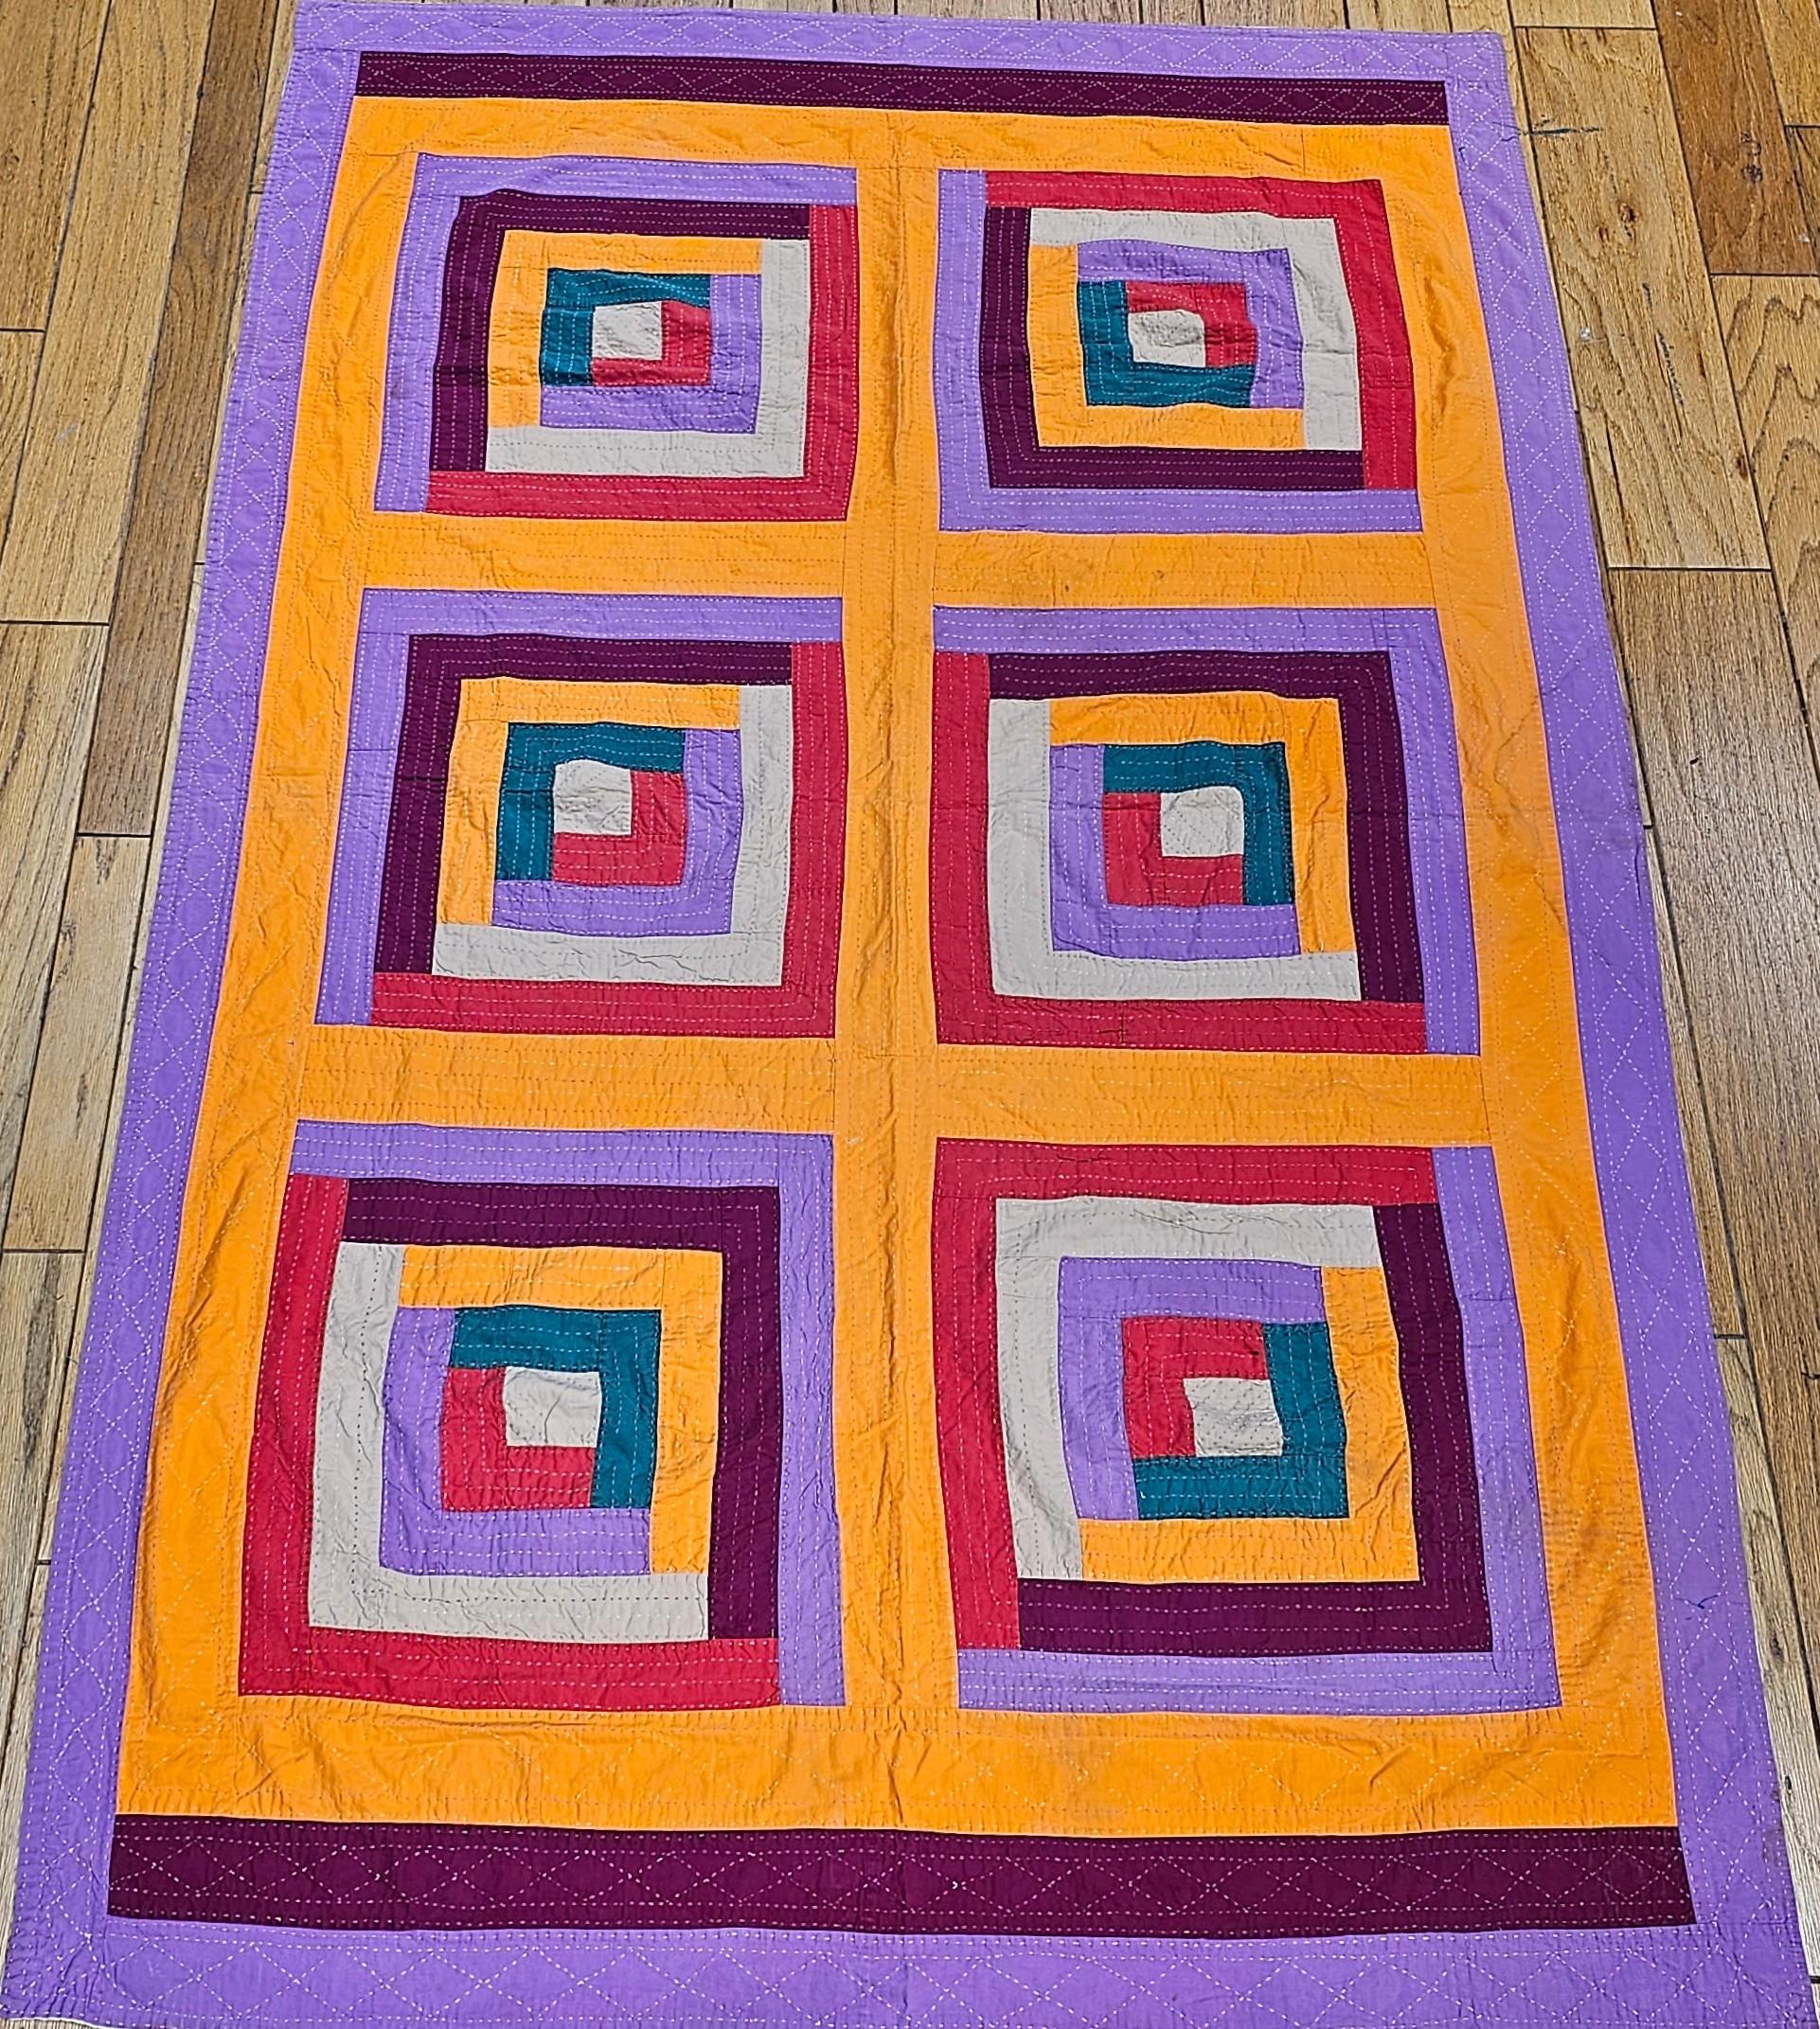 Handgestickte afroamerikanische Südstaaten-Decke aus der Mitte des 20. Jahrhunderts.  Dieser wunderbare Quilt mit geometrischem Muster ähnelt in seinem Design sehr den Quilts, die im 19. und frühen 20. Jahrhundert von Afroamerikanern in Gee's Bend,